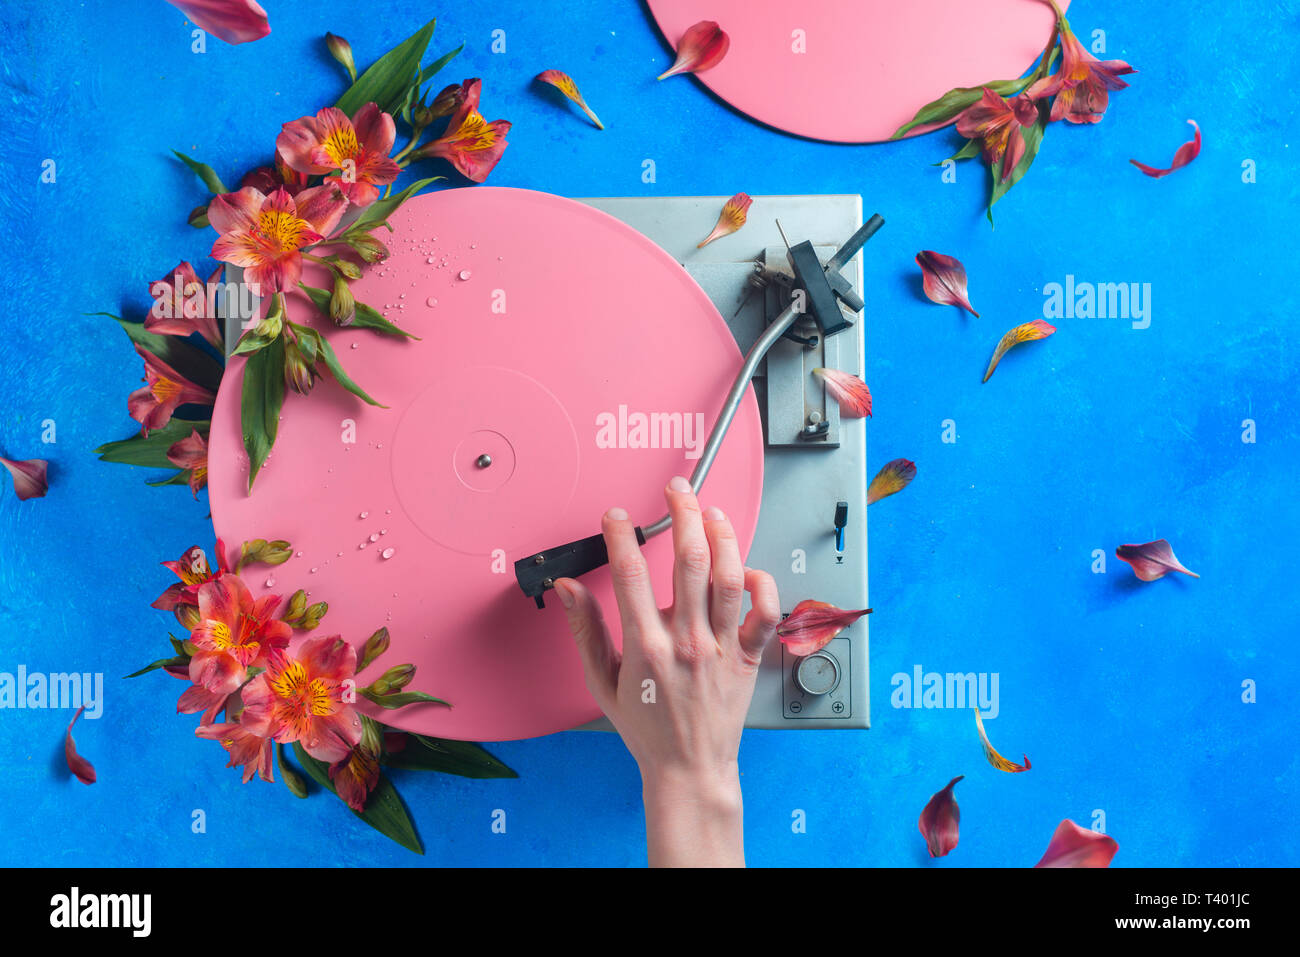 Colorido reproductor de discos de vinilo con pétalos y hojas. Pink pop up plano conceptual sentar con flores. Todavía la vida musical de primavera Foto de stock